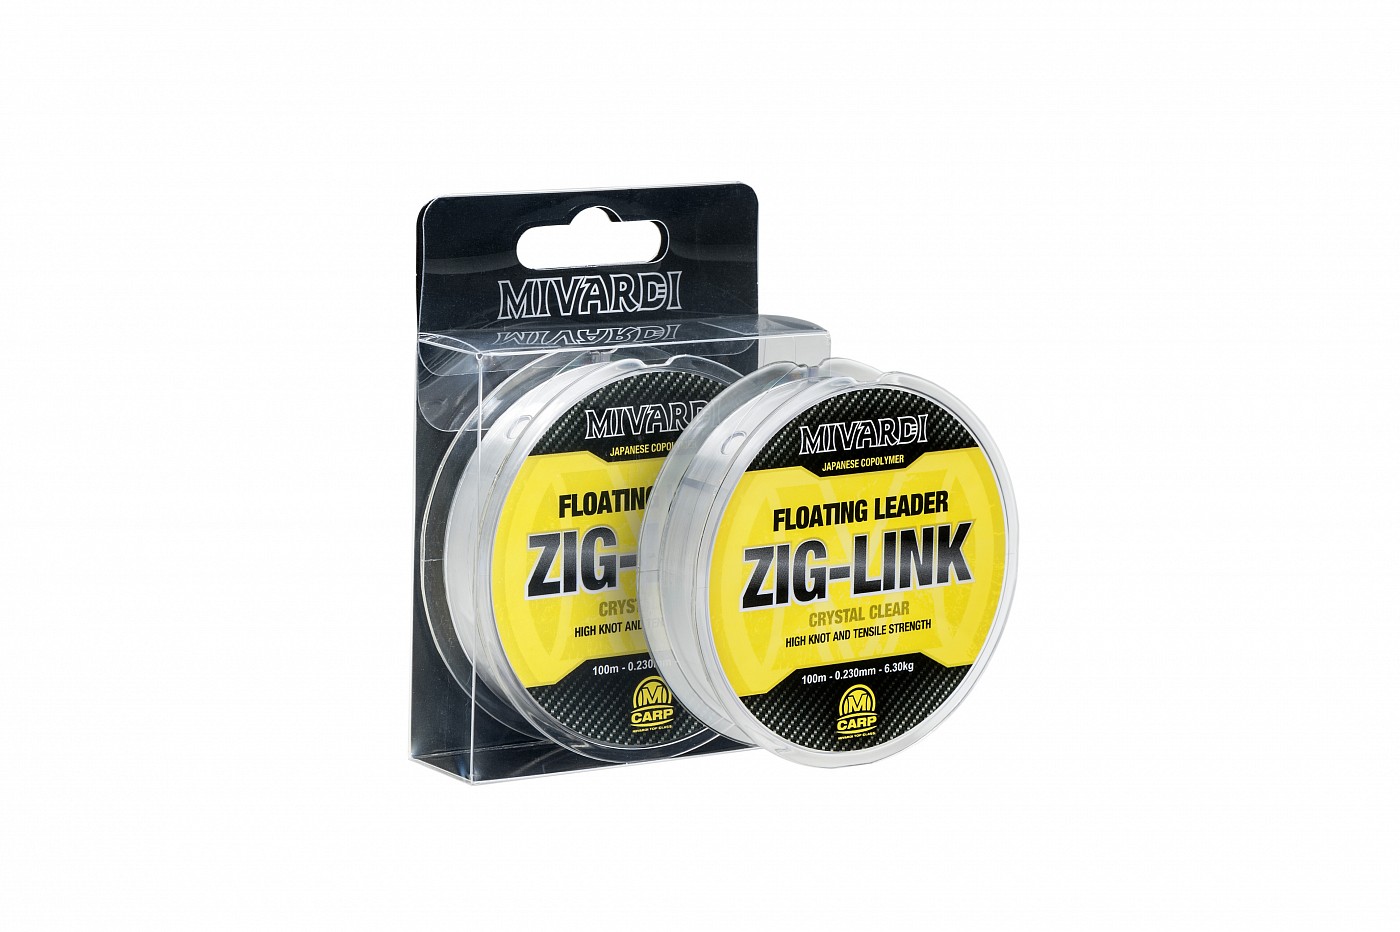 Zig-link